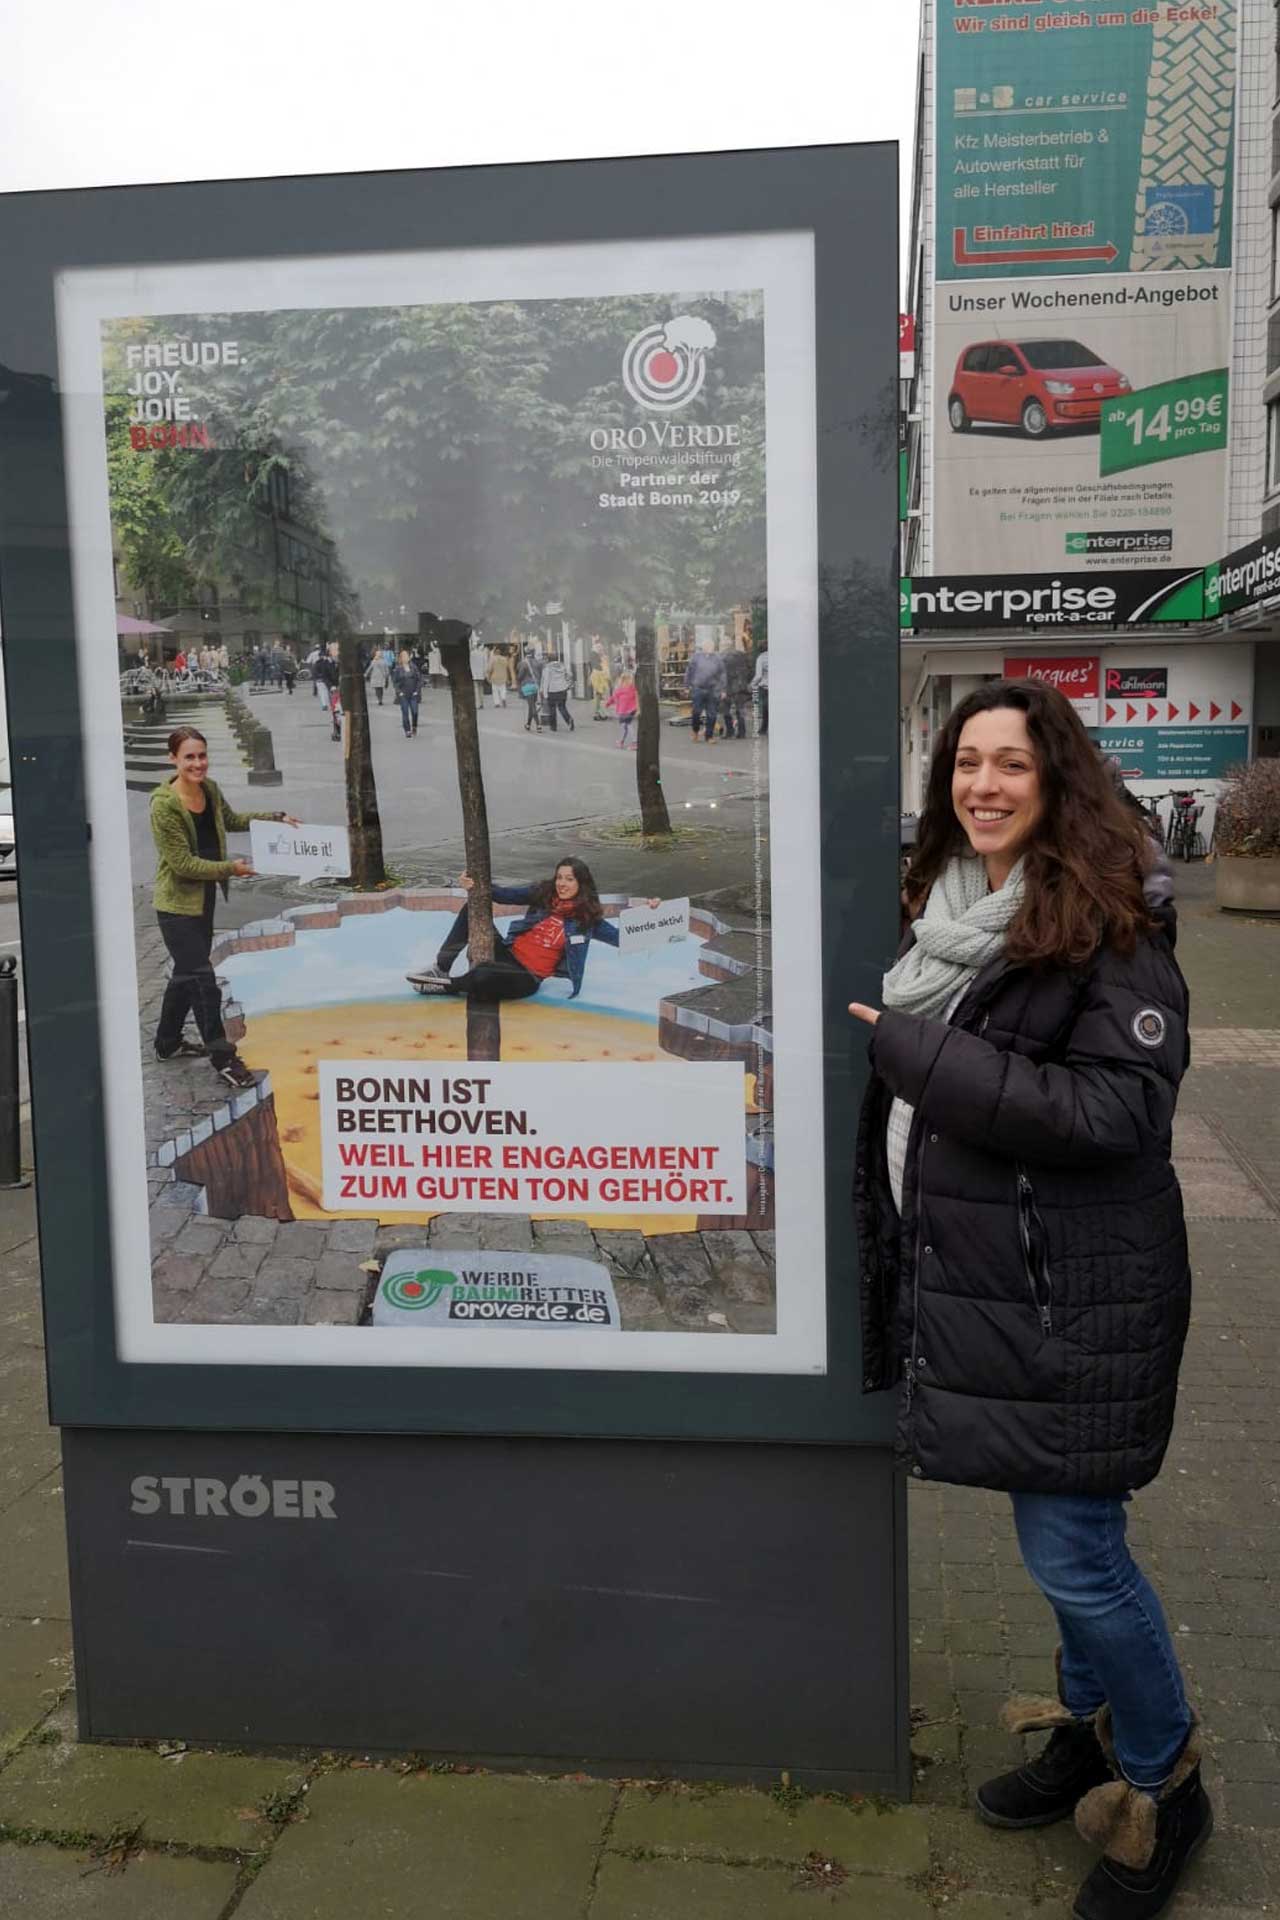 OroVerde-Mitarbeiterin Andrea Kracke-Berndorf freute sich sehr über die Veröffentlichung des Beethoven-Kampagnen-Plakats der Stadt Bonn. Auch ihr Ideenreichtum floss in den Slogan mit ein. ©OroVerde